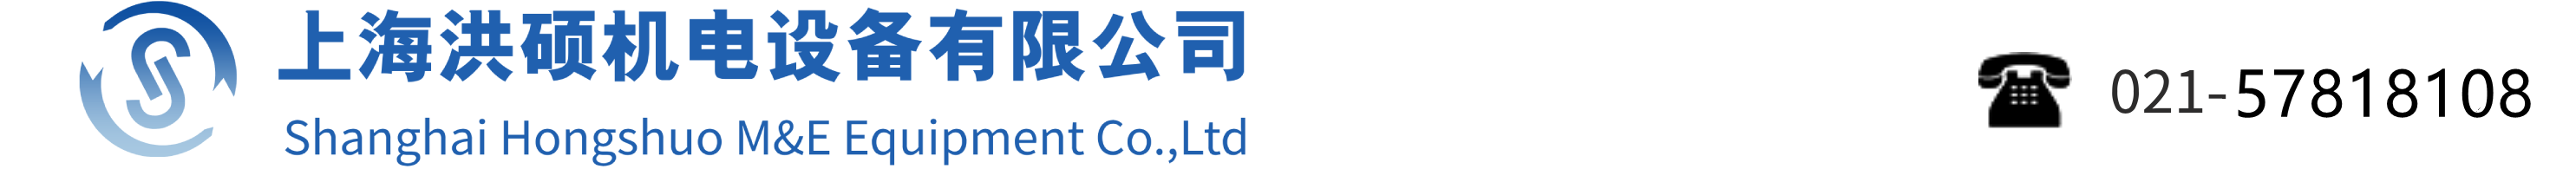 上海洪硕机电设备有限公司网站Logo